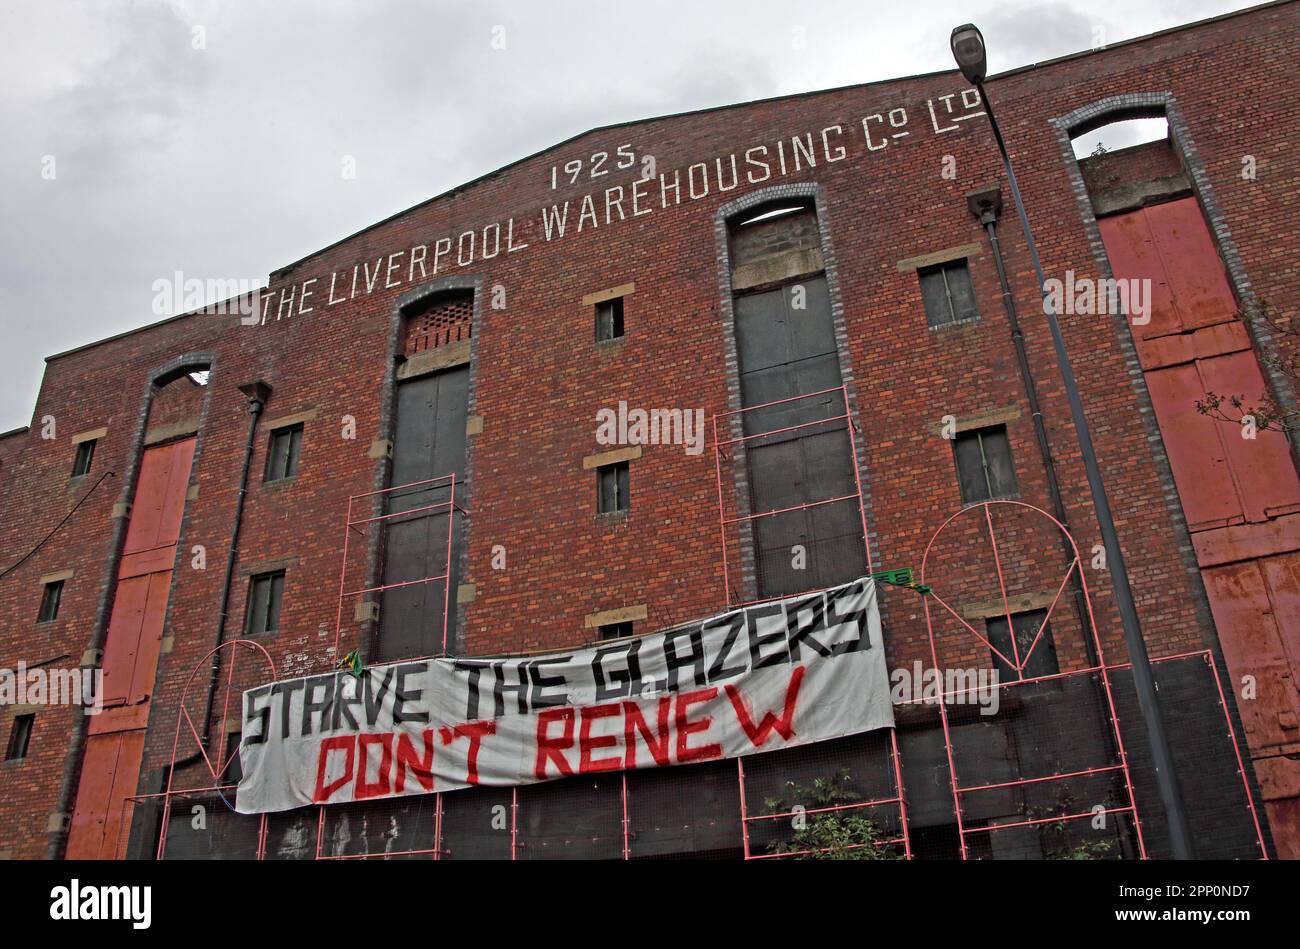 Starve the Glazers, ne pas renouveler le panneau de graffiti, à Trafford Park, MUFC, Manchester United vente, opinion des fans, Manchester, Angleterre, Royaume-Uni Banque D'Images